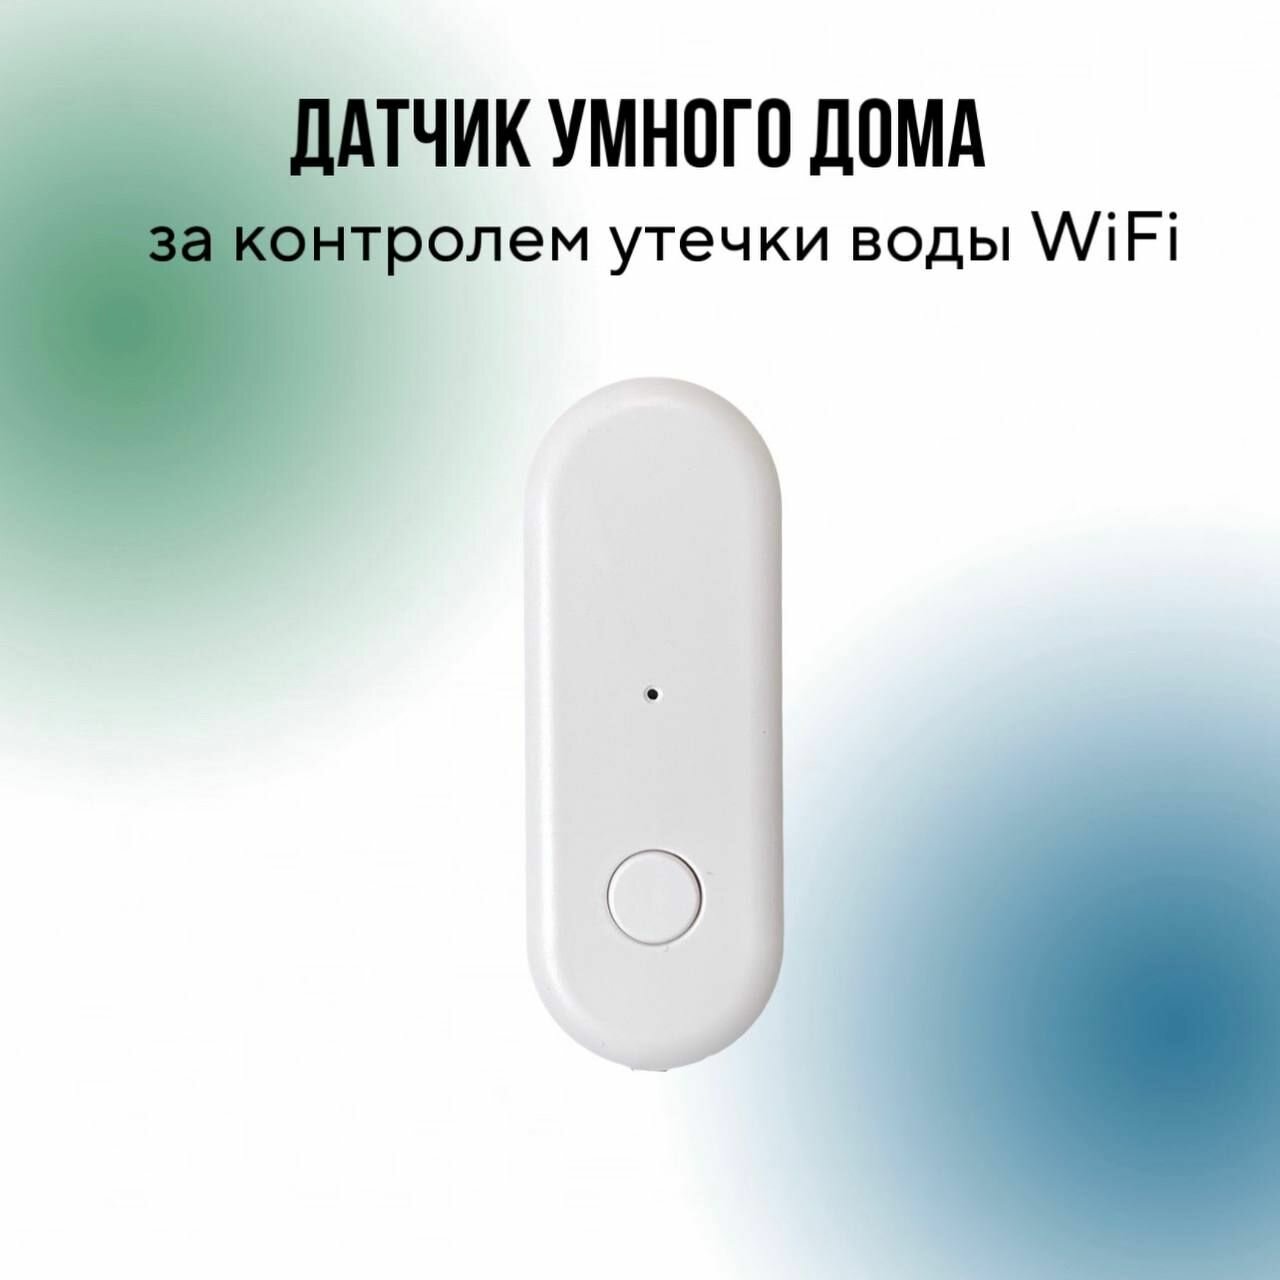 Датчик утечки воды Wi-Fi совместим с Tuya/Life